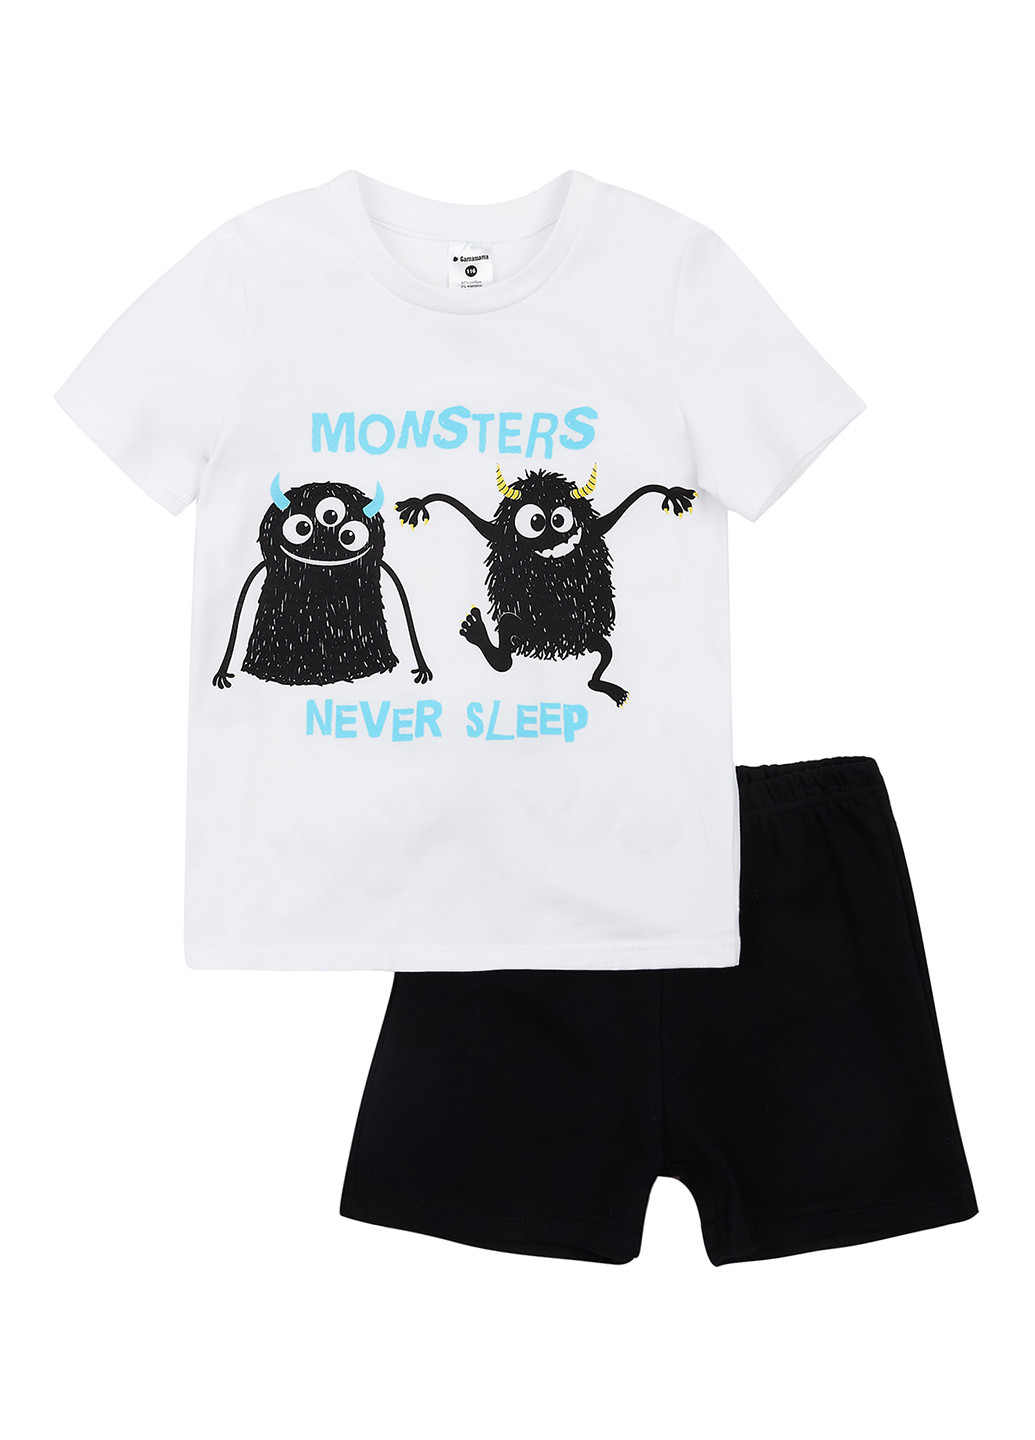 Черно-белая всесезон пижама (футболка, шорты) футболка + шорты Garnamama